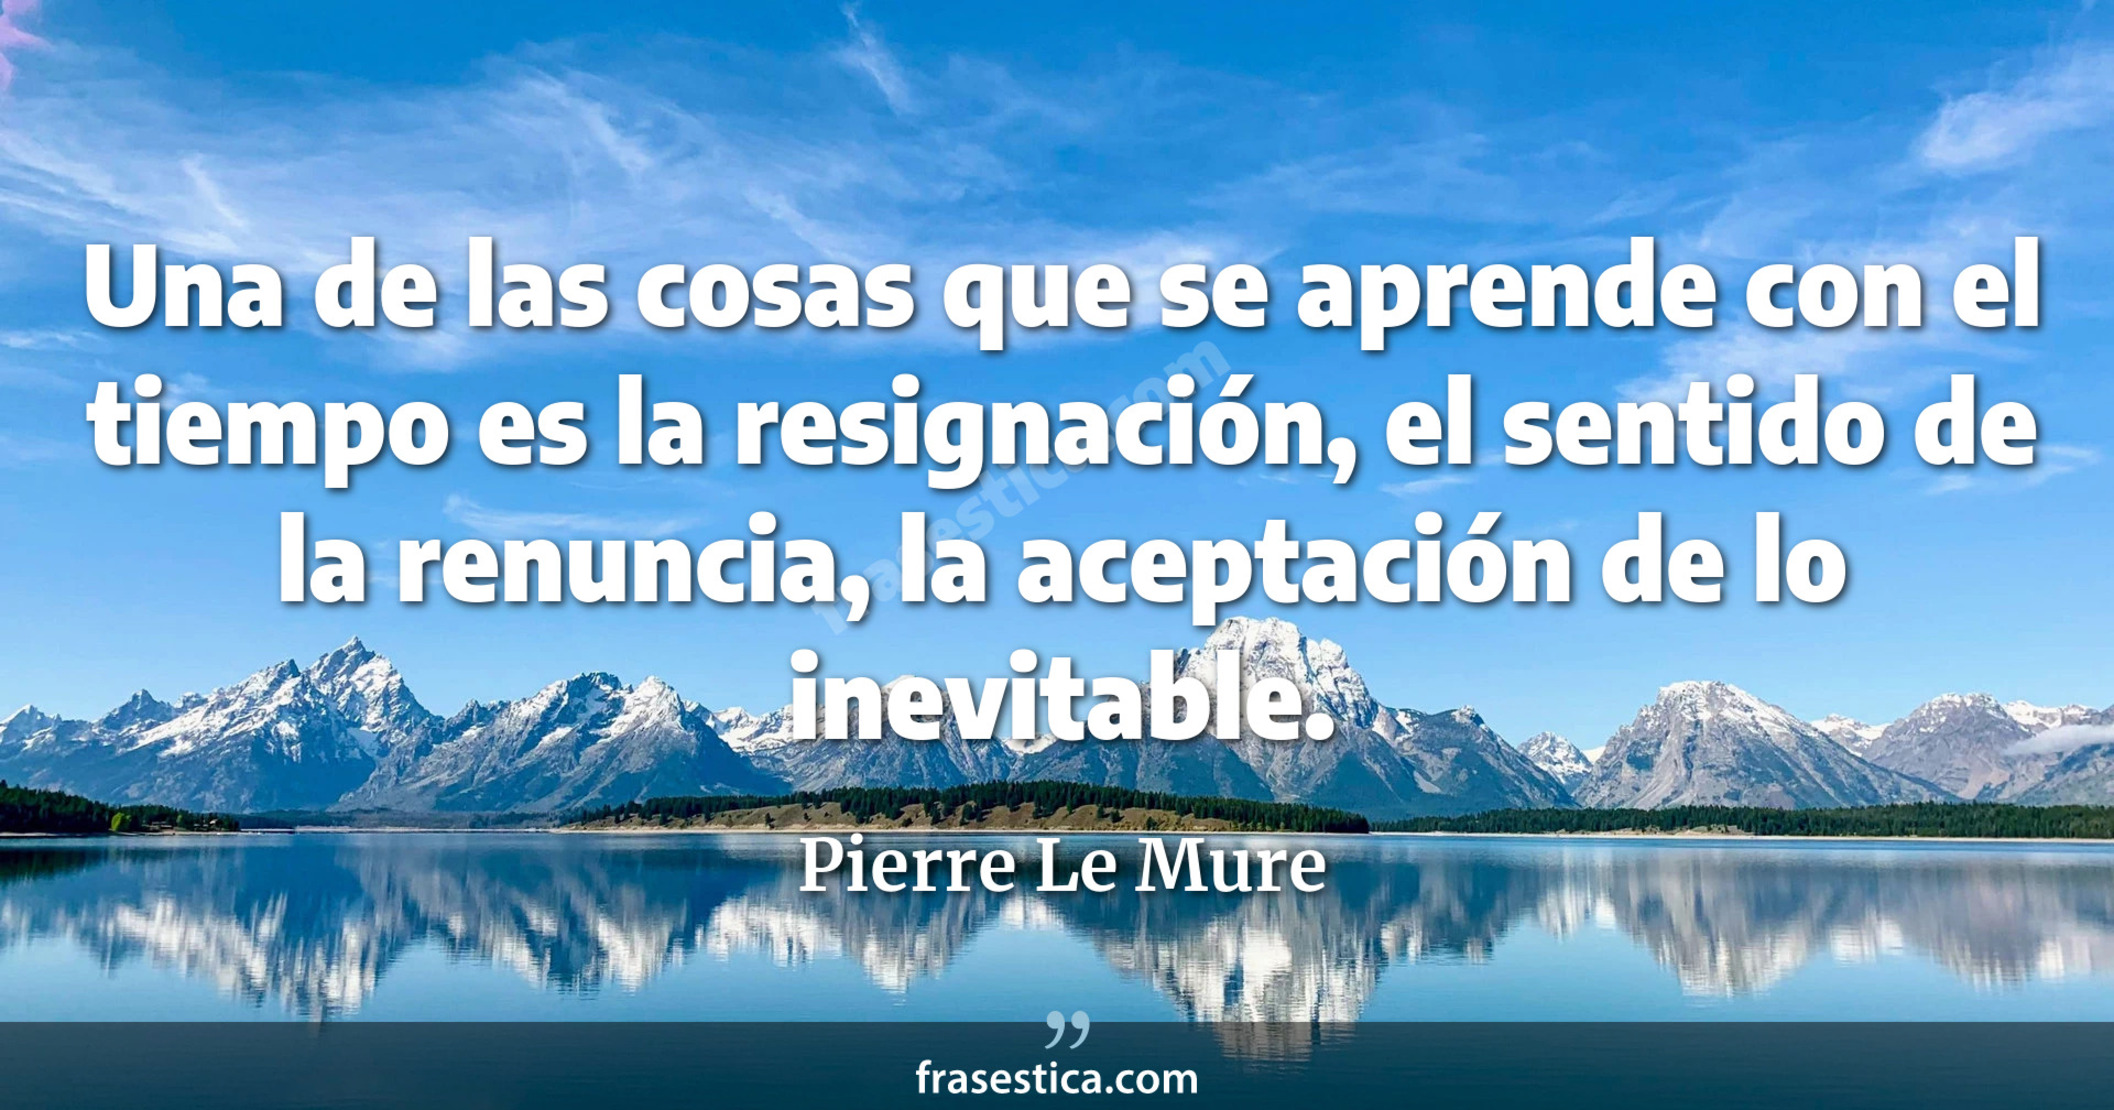 Una de las cosas que se aprende con el tiempo es la resignación, el sentido de la renuncia, la aceptación de lo inevitable. - Pierre Le Mure